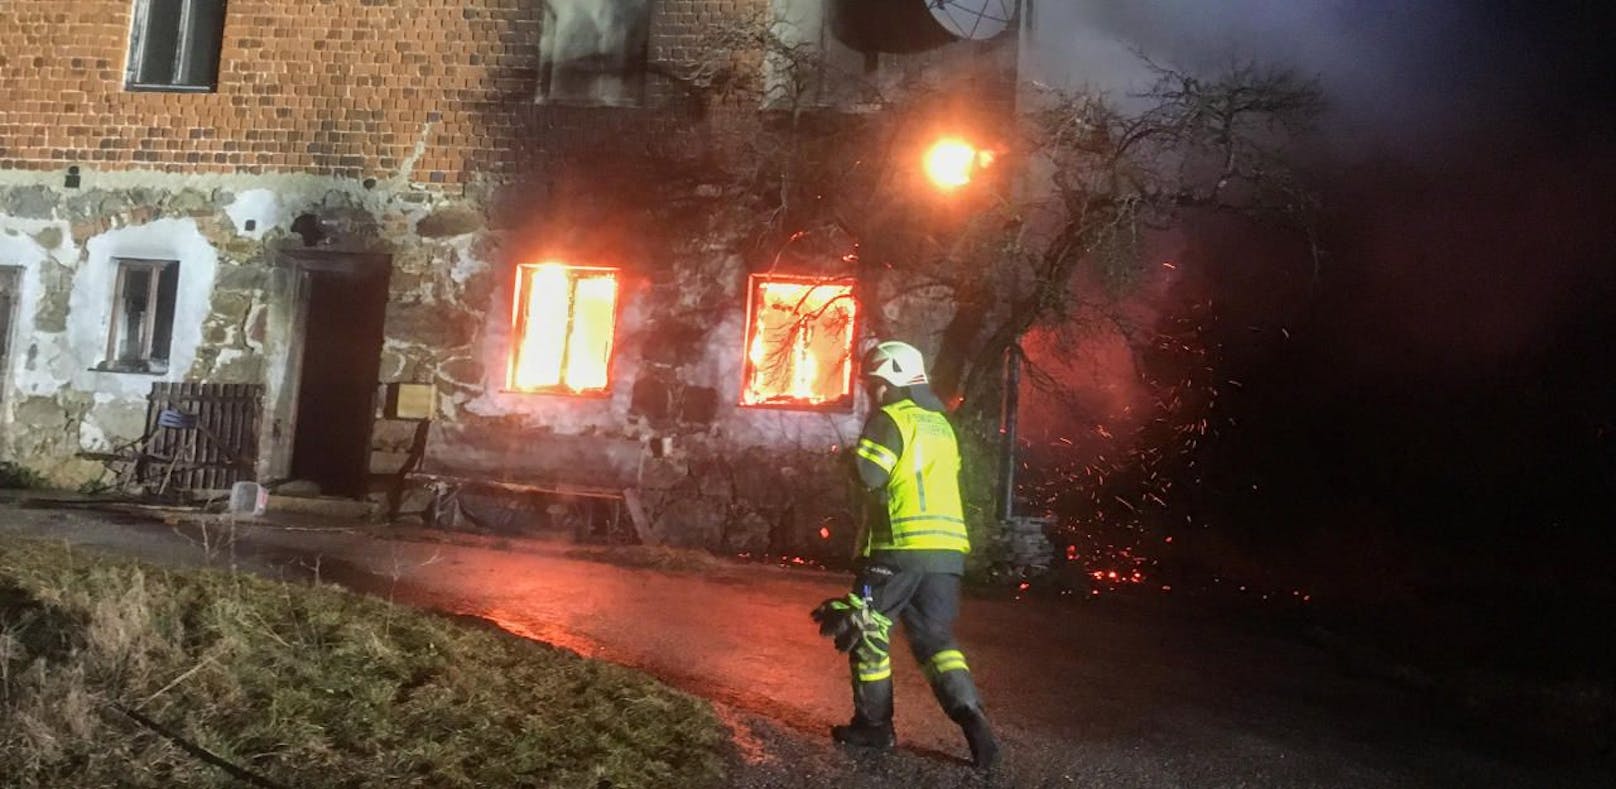 Brand tobt in Wohnhaus, Helfer finden eine Leiche